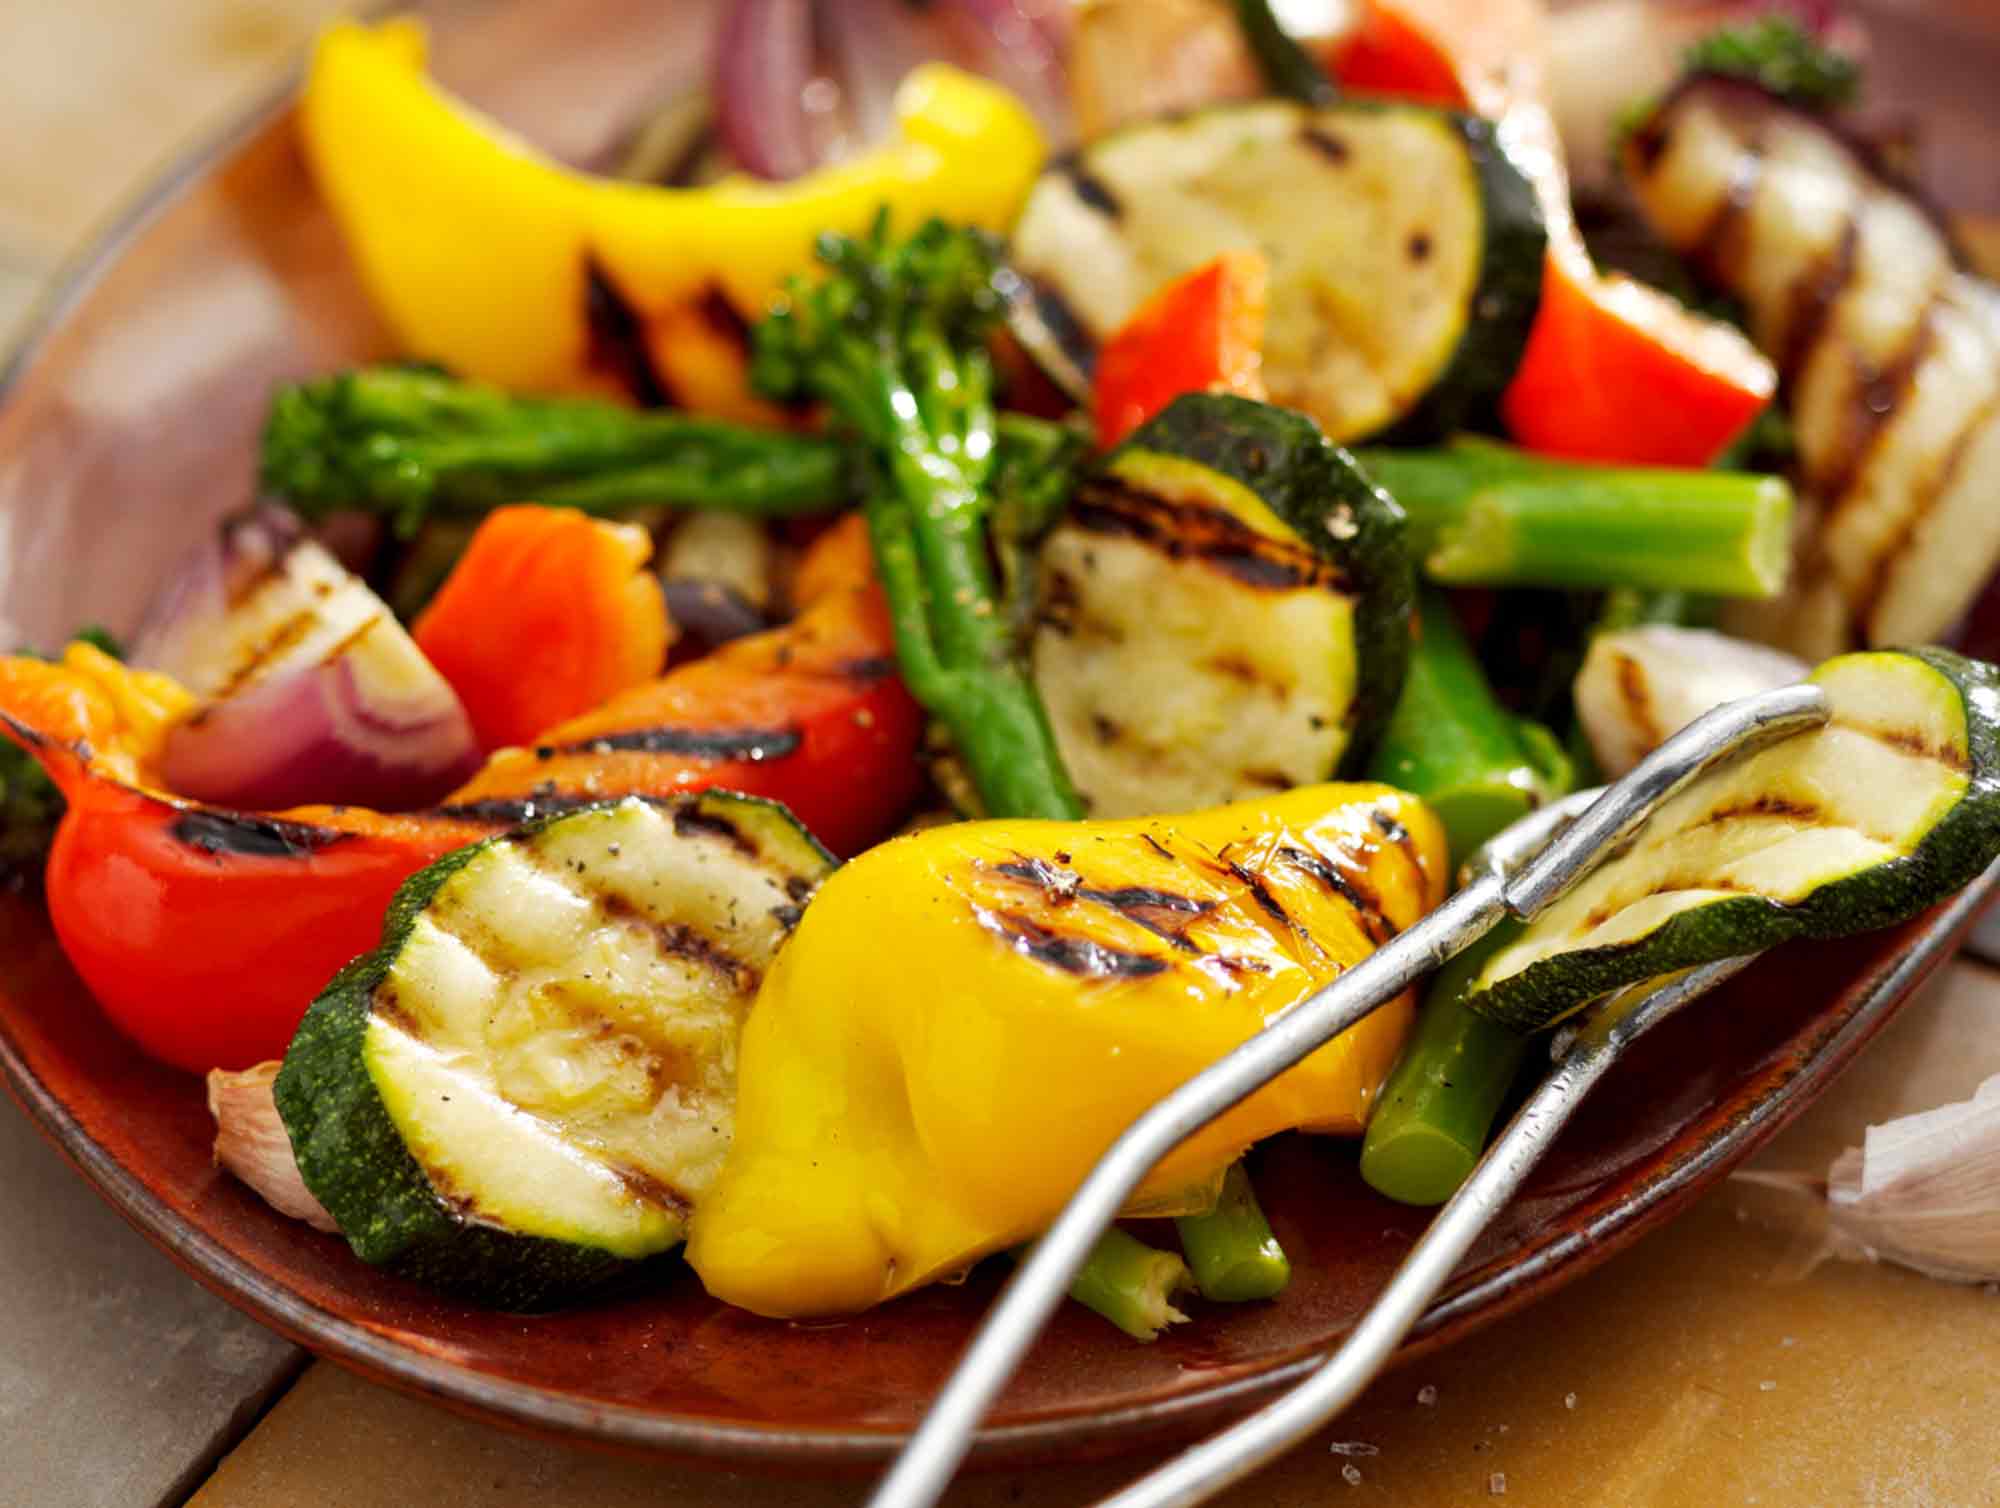 Sådan bevarer du grøntagers næringsstoffer under madlavning: Dampning af grøntsager